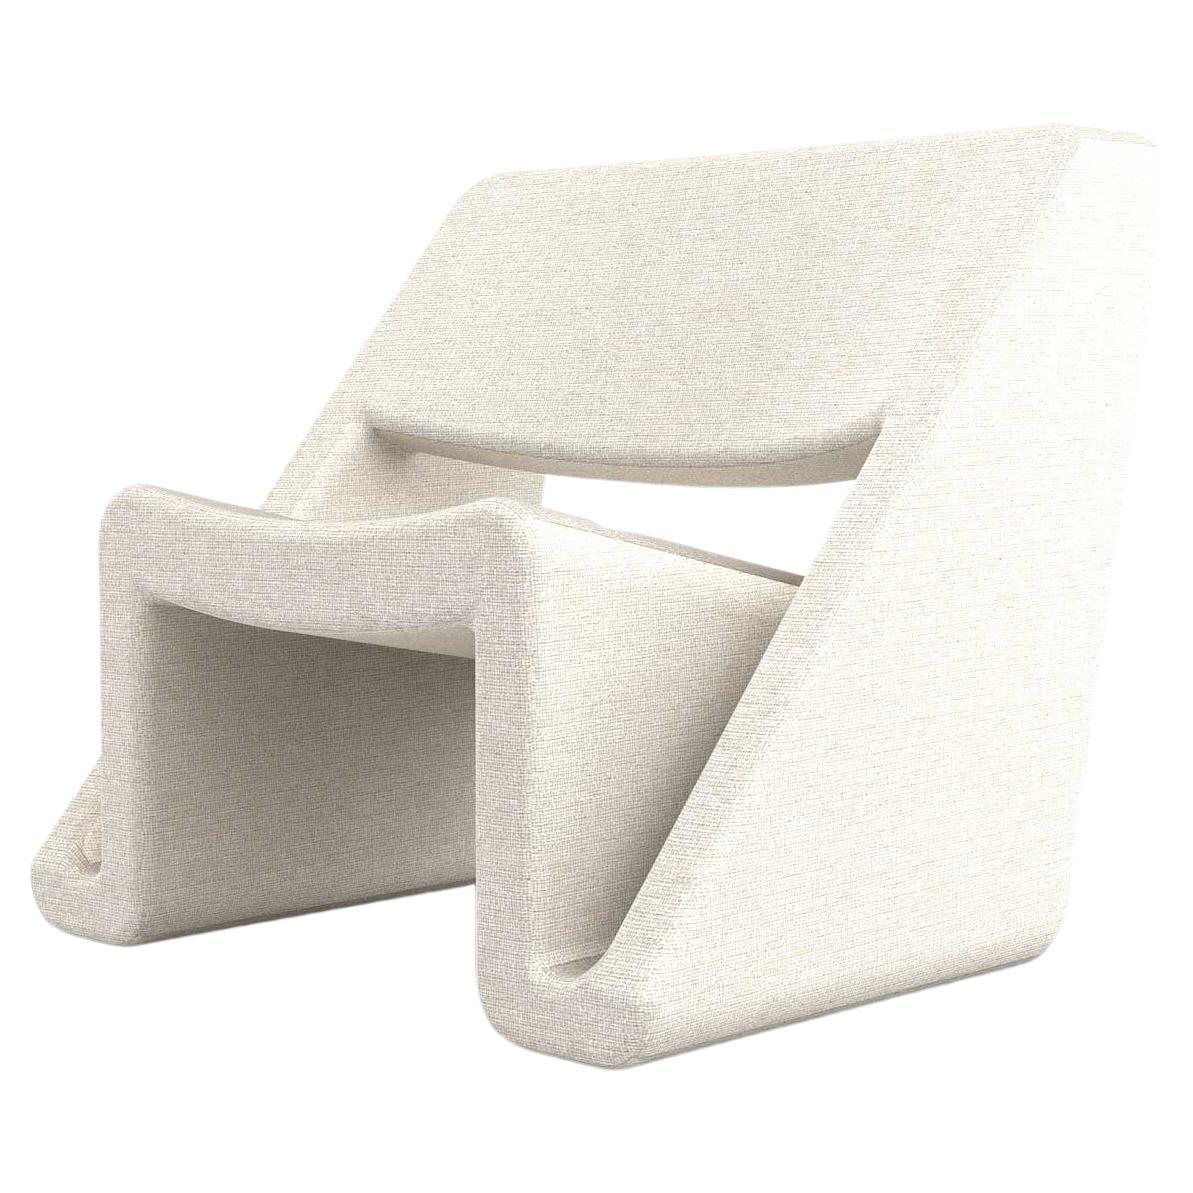 Jet Armchair - Modern White Upholstered Armchair